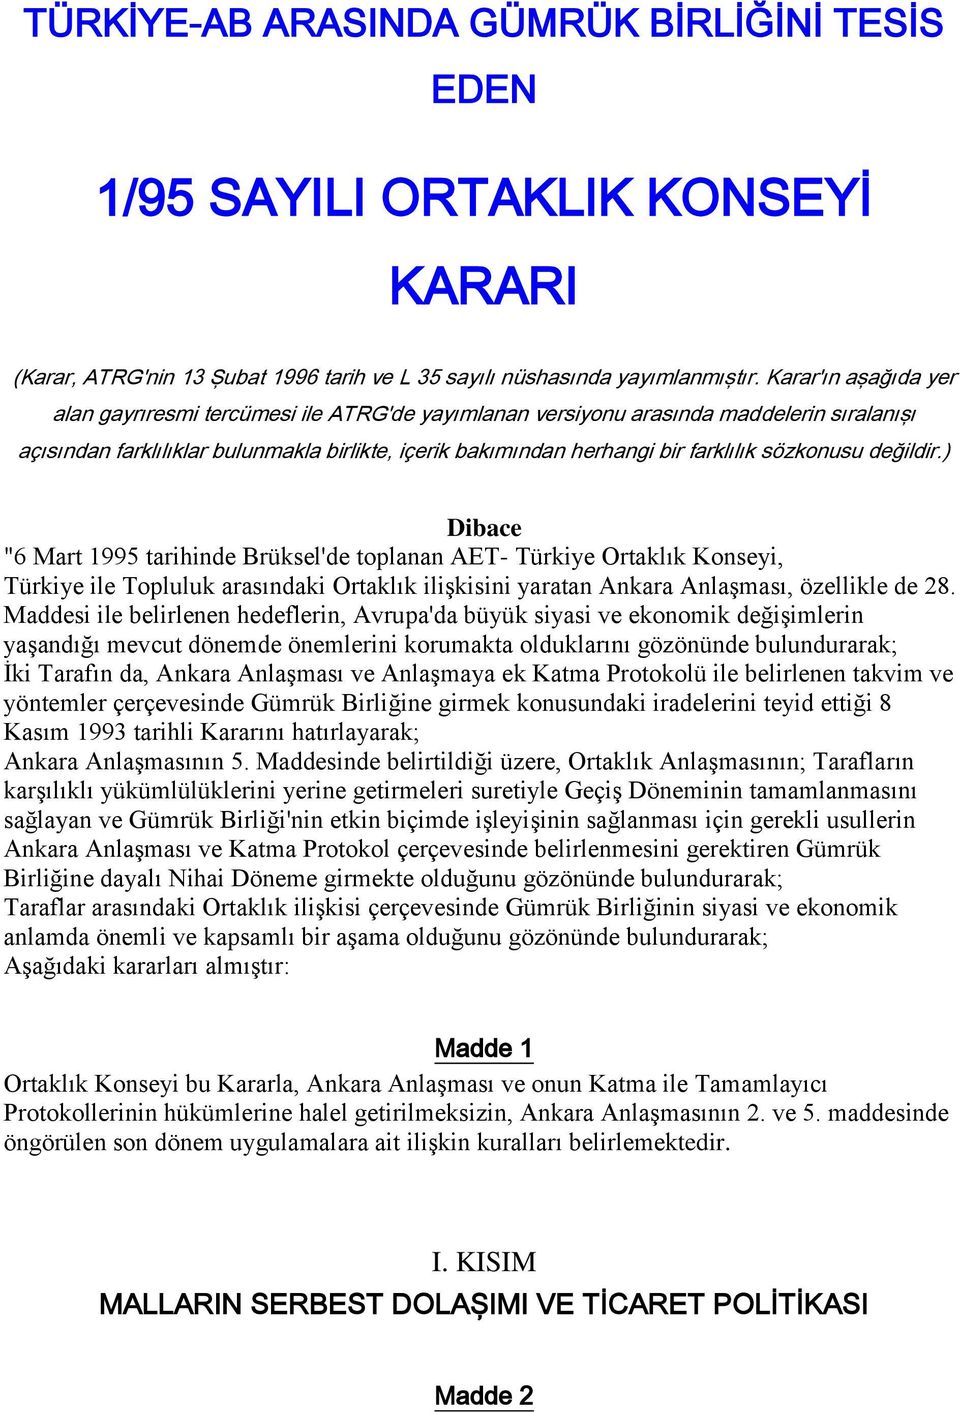 sözkonusu değildir.) Dibace "6 Mart 1995 tarihinde Brüksel'de toplanan AET- Türkiye Ortaklık Konseyi, Türkiye ile Topluluk arasındaki Ortaklık ilişkisini yaratan Ankara Anlaşması, özellikle de 28.